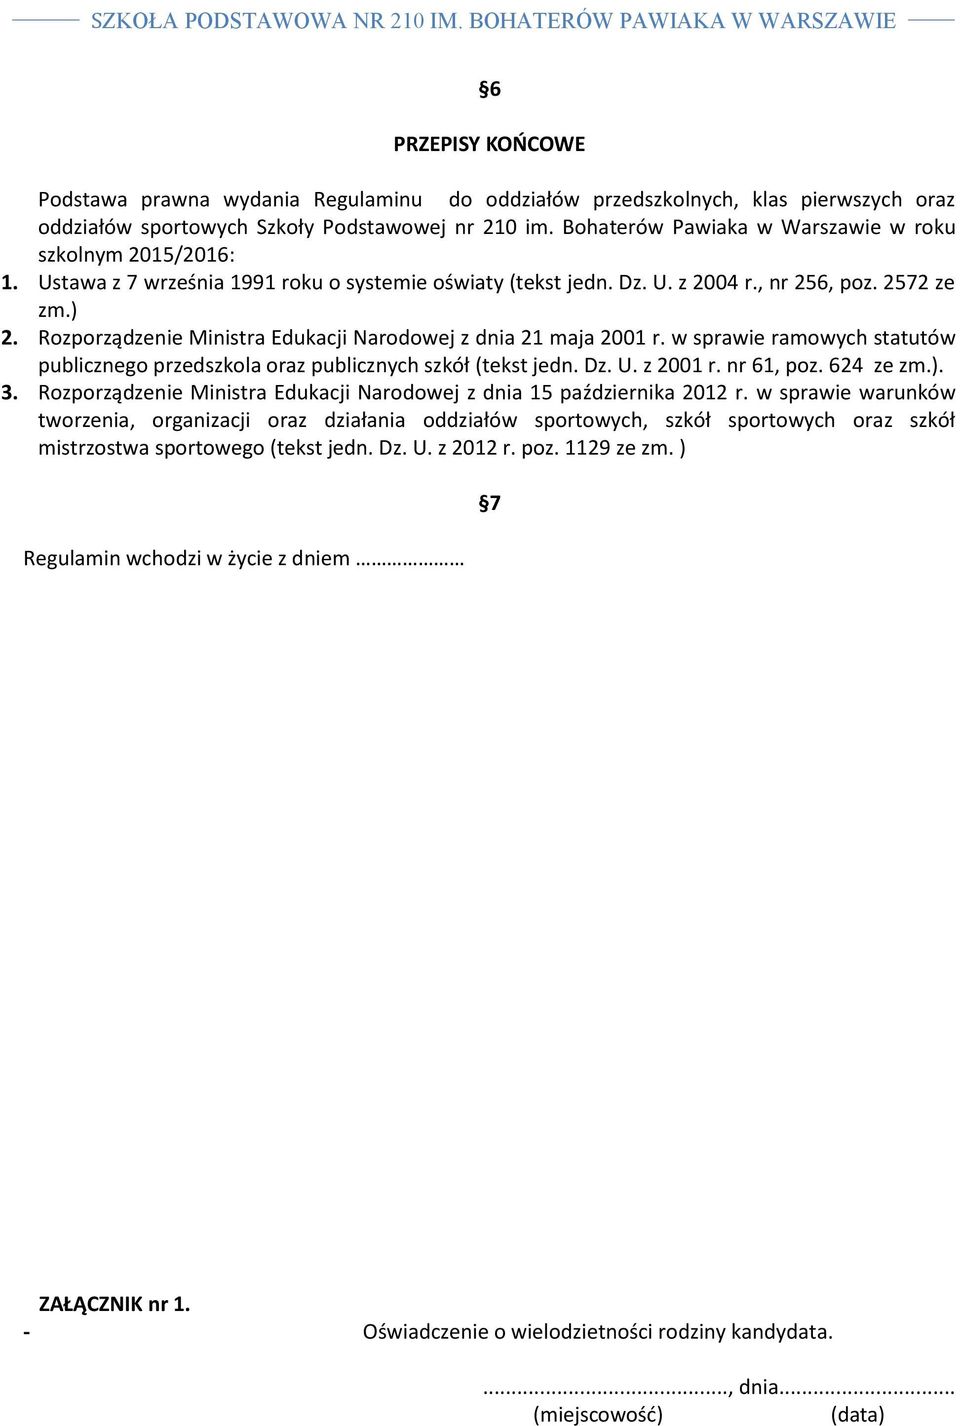 Rozporządzenie Ministra Edukacji Narodowej z dnia 21 maja 2001 r. w sprawie ramowych statutów publicznego przedszkola oraz publicznych szkół (tekst jedn. Dz. U. z 2001 r. nr 61, poz. 624 ze zm.). 3.